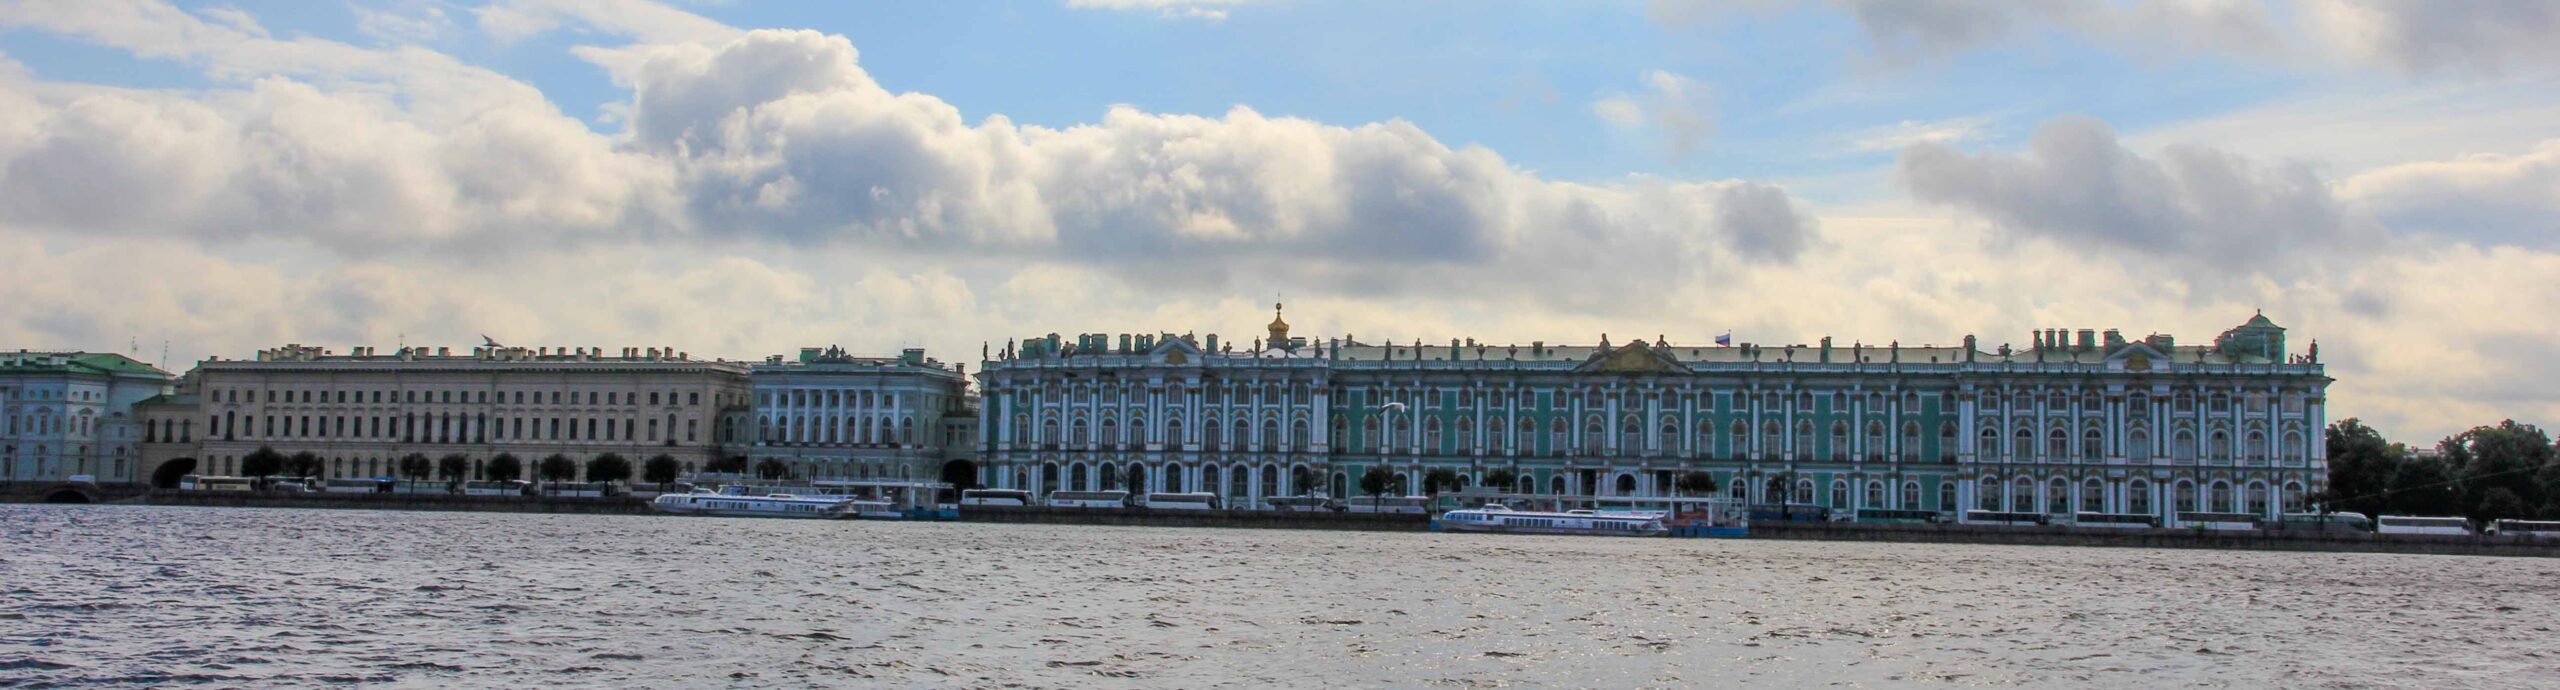 Saint Petersburg,St.Petersburg,russia,Hermitage Museum,russia